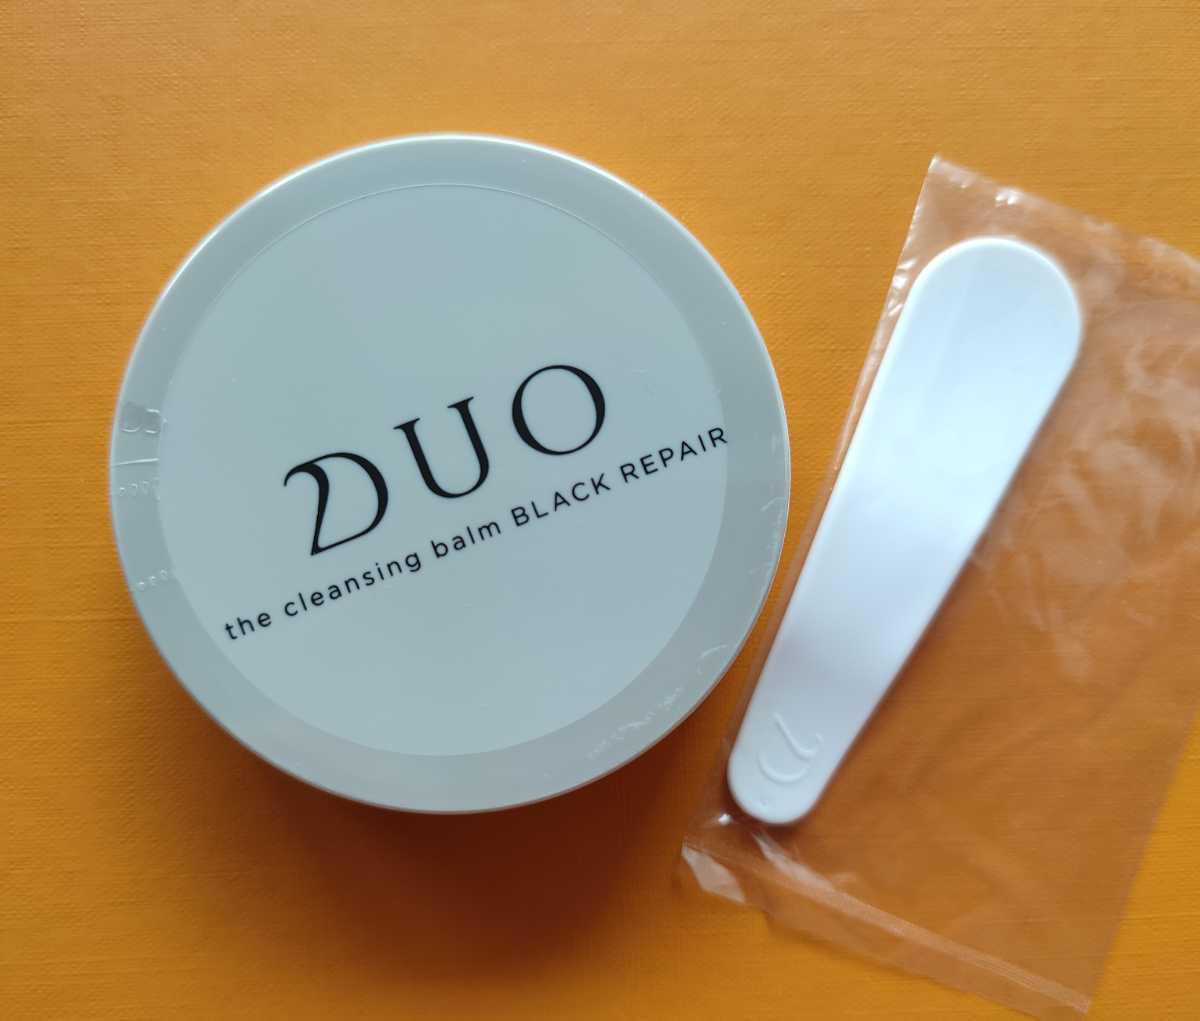 DUO чёрный Duo The очищение балка m черный ремонт 20g